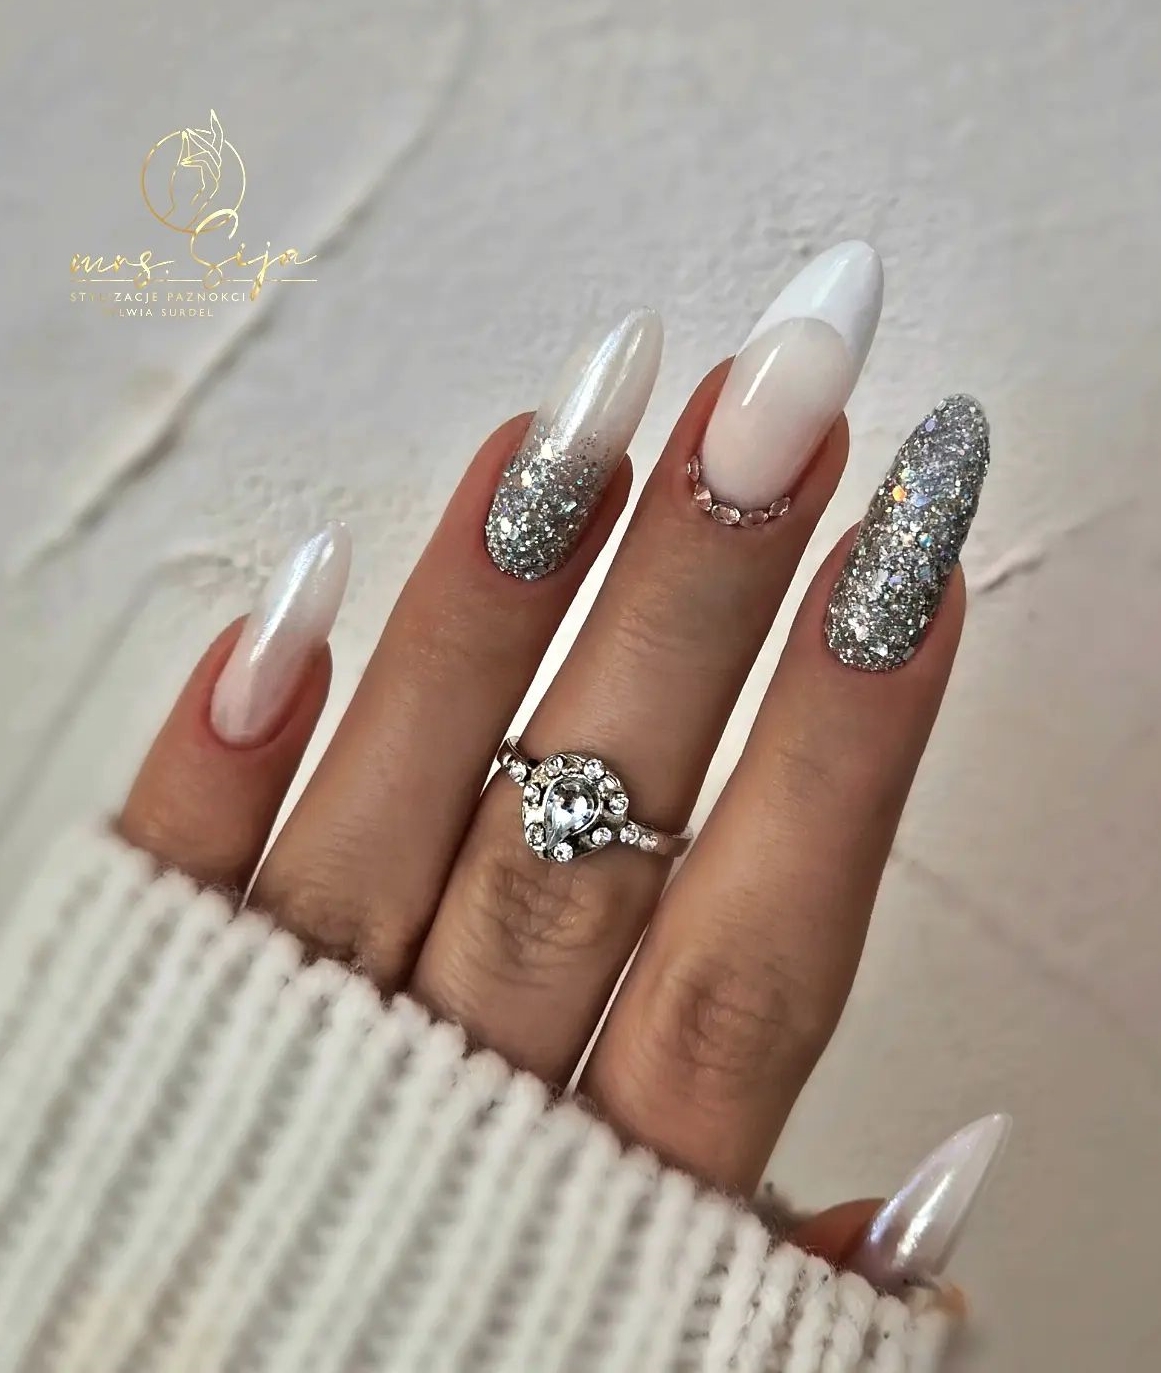 Lange ronde nagels met zilveren glitterontwerp